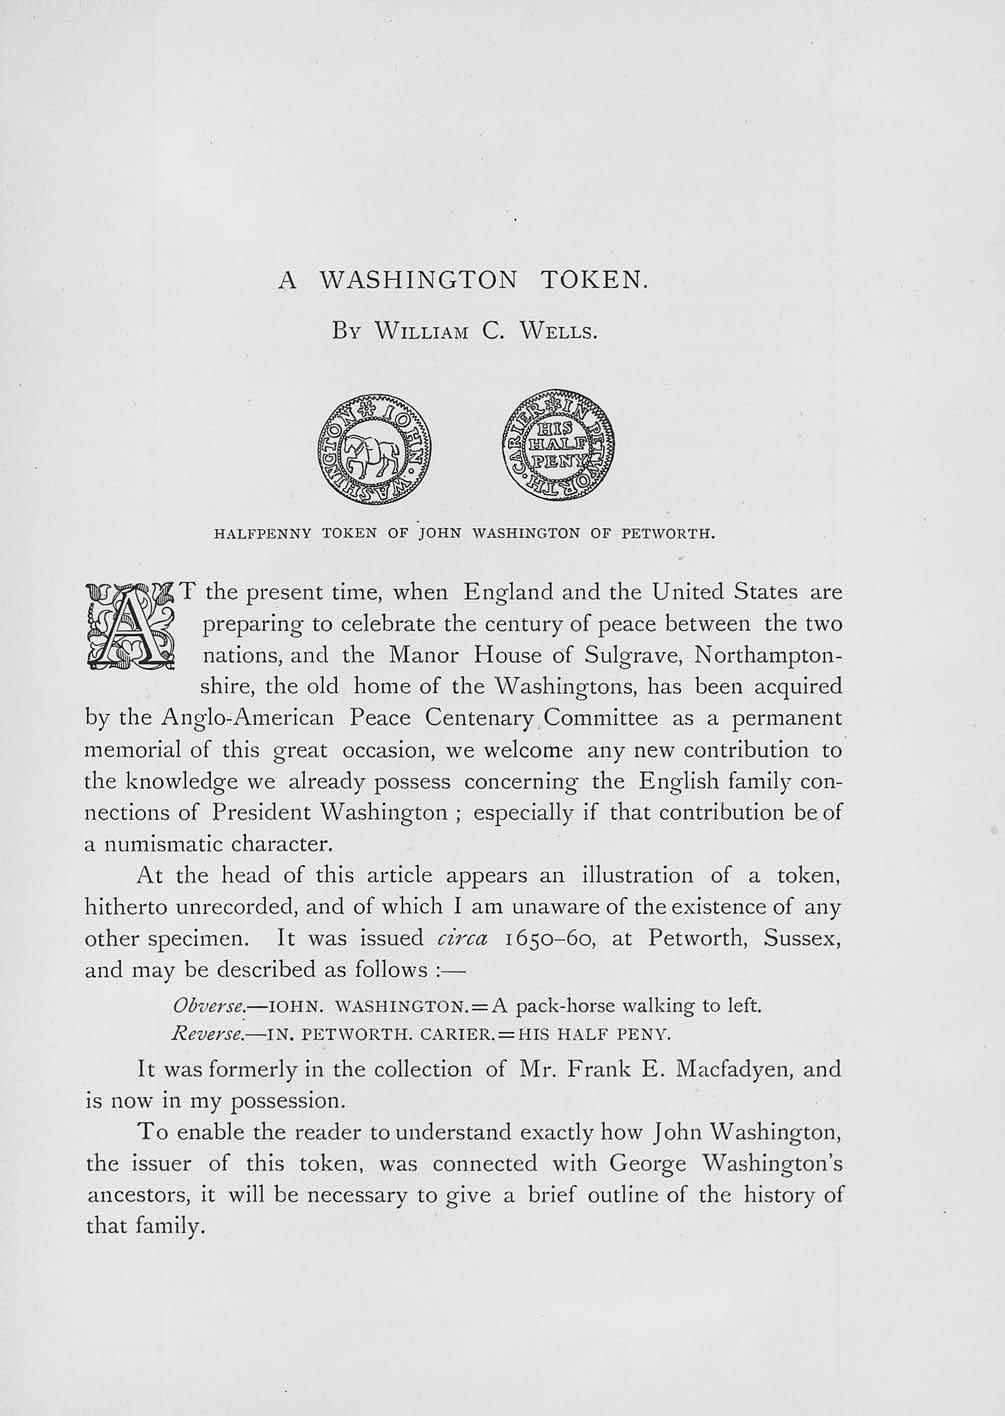 A WASHINGTON TOKEN. BY WILLIAM C. WELLS.